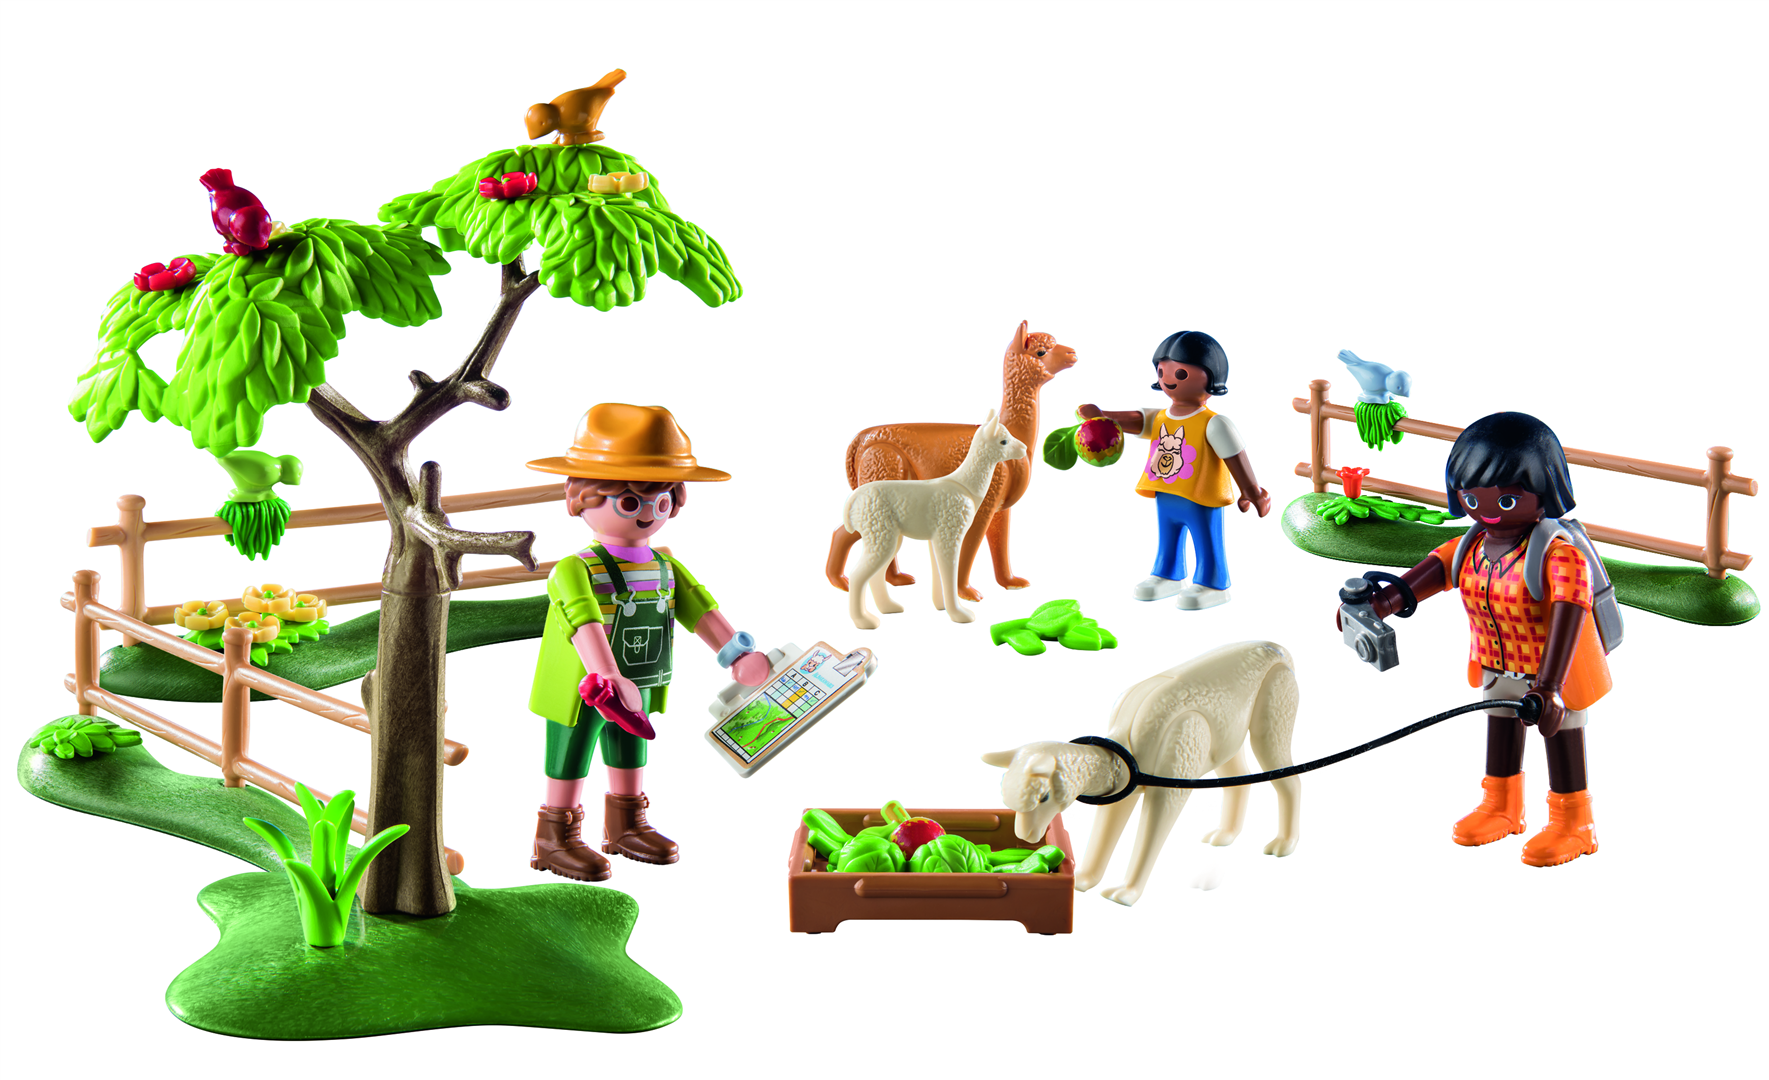 Playmobil country 71251 passeggiata con gli alpaca per bambini dai 4 anni in su - Playmobil